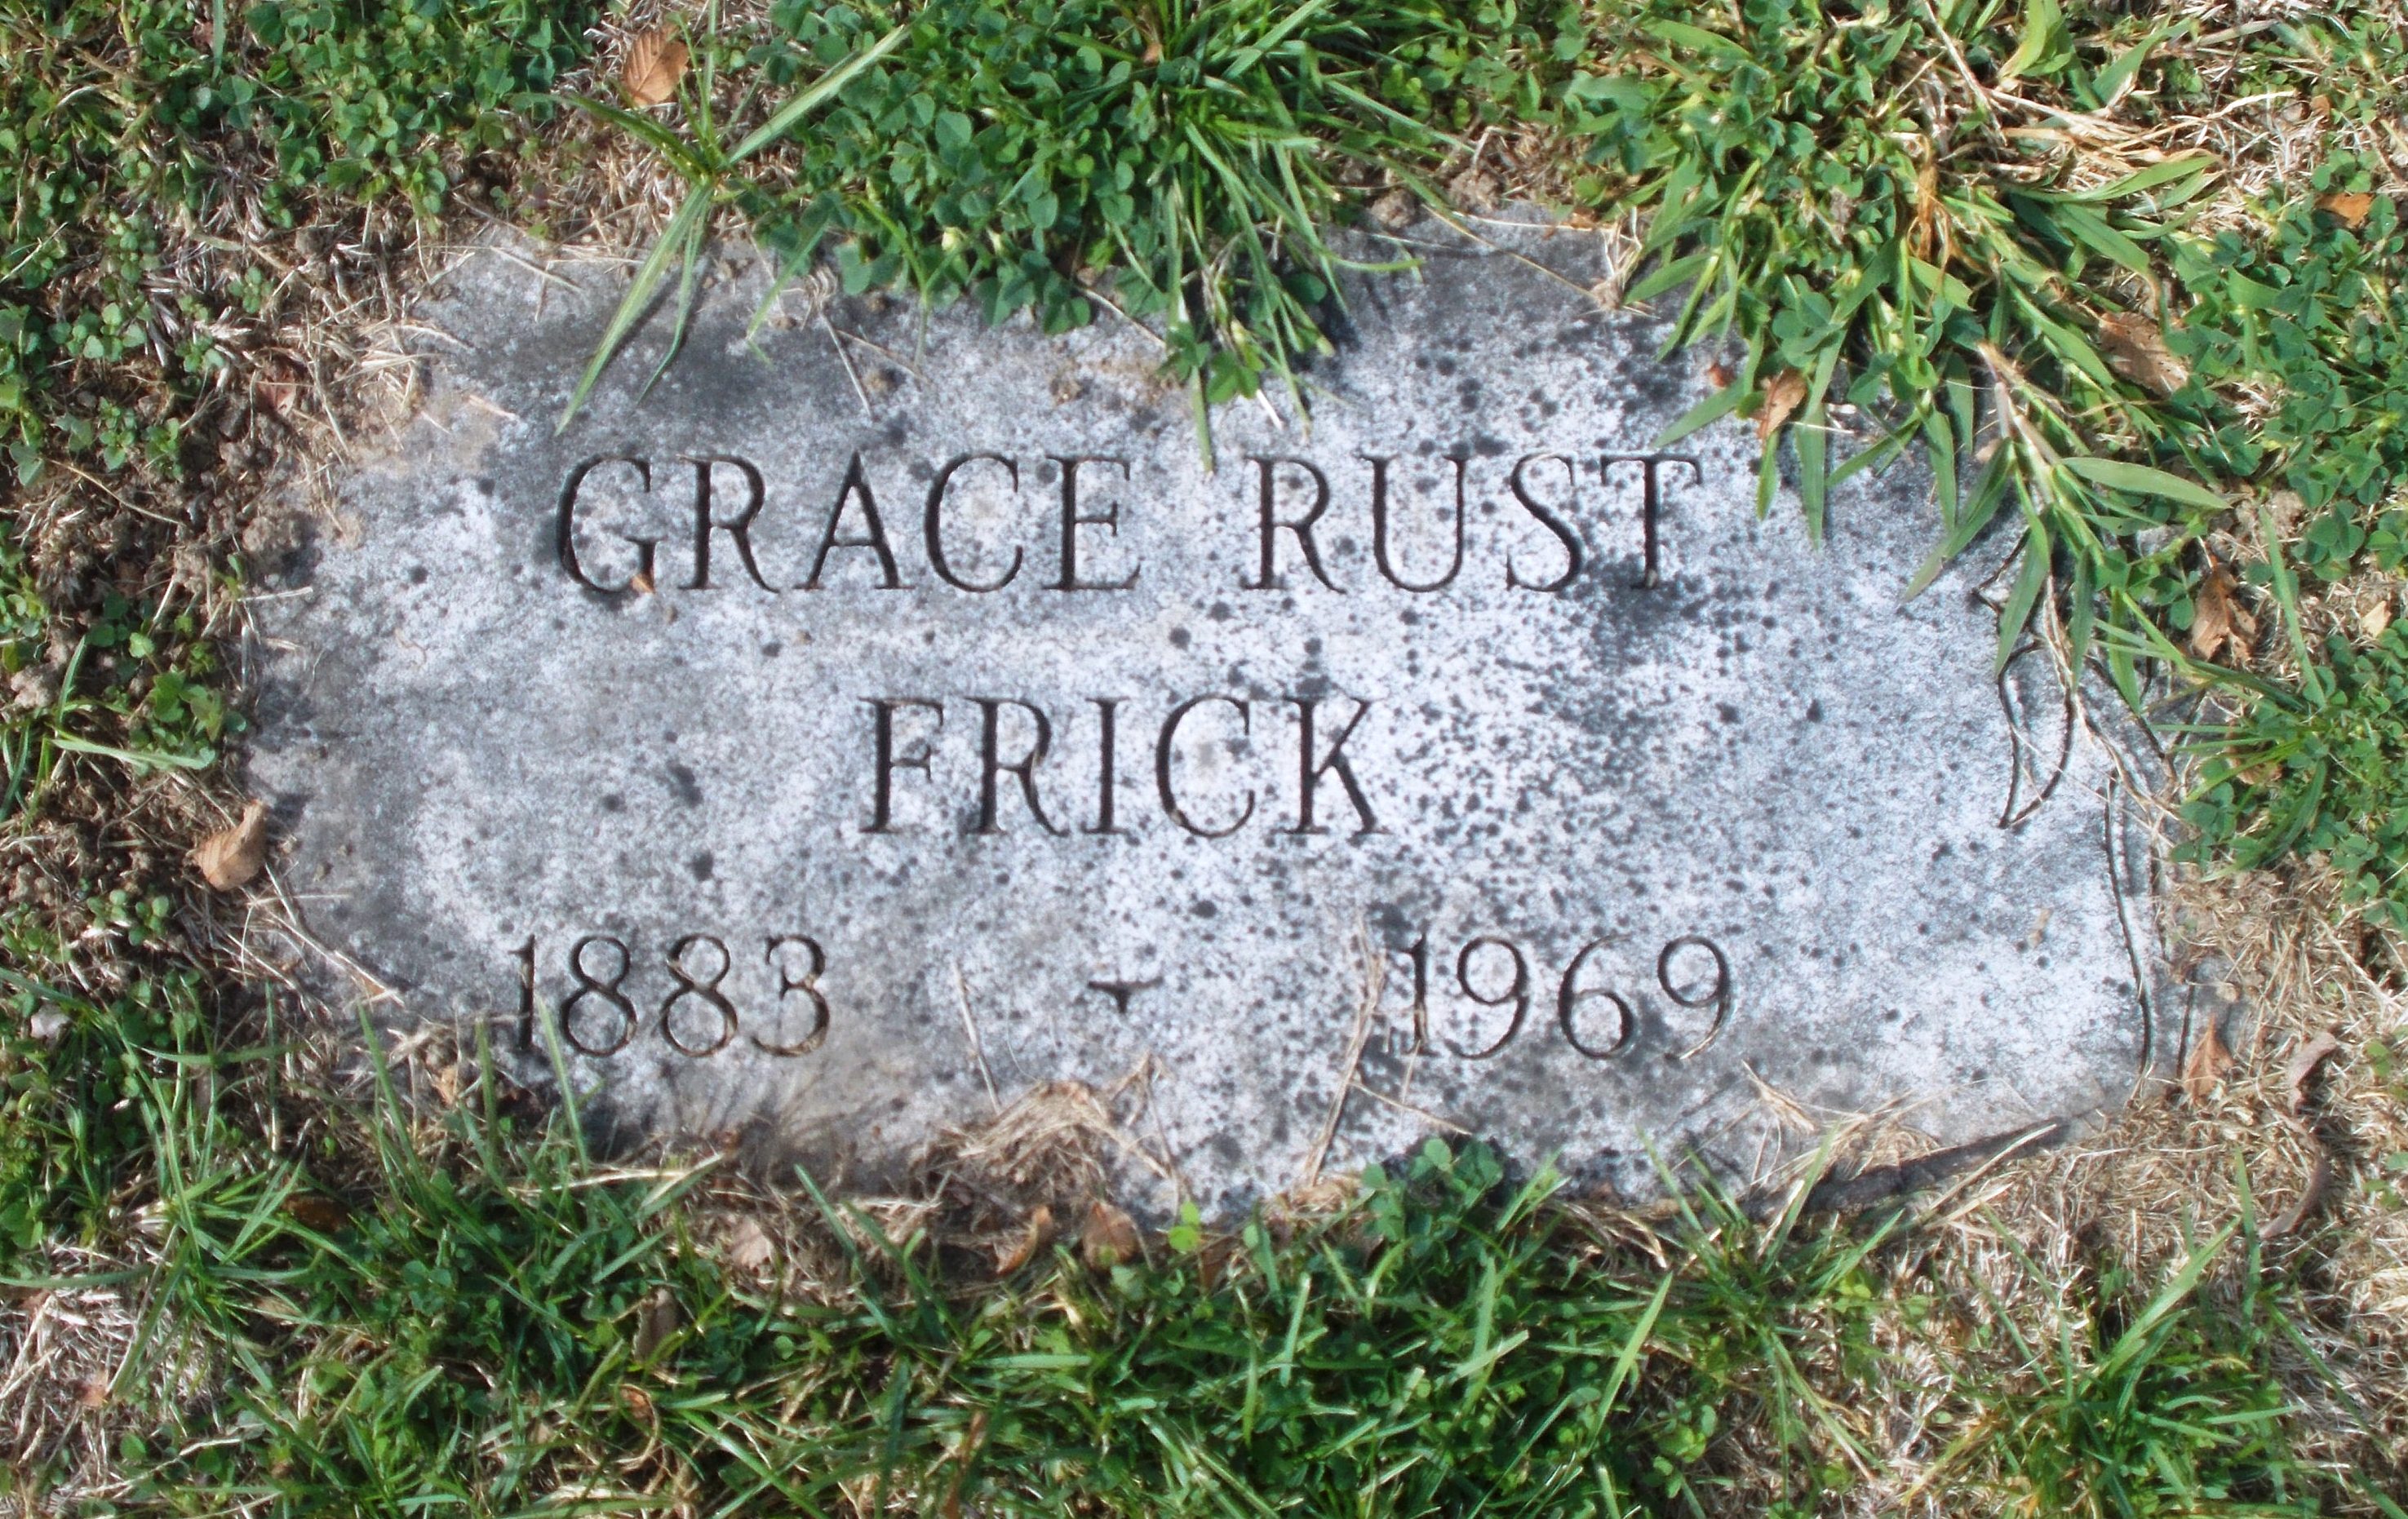 Grace Rust Frick